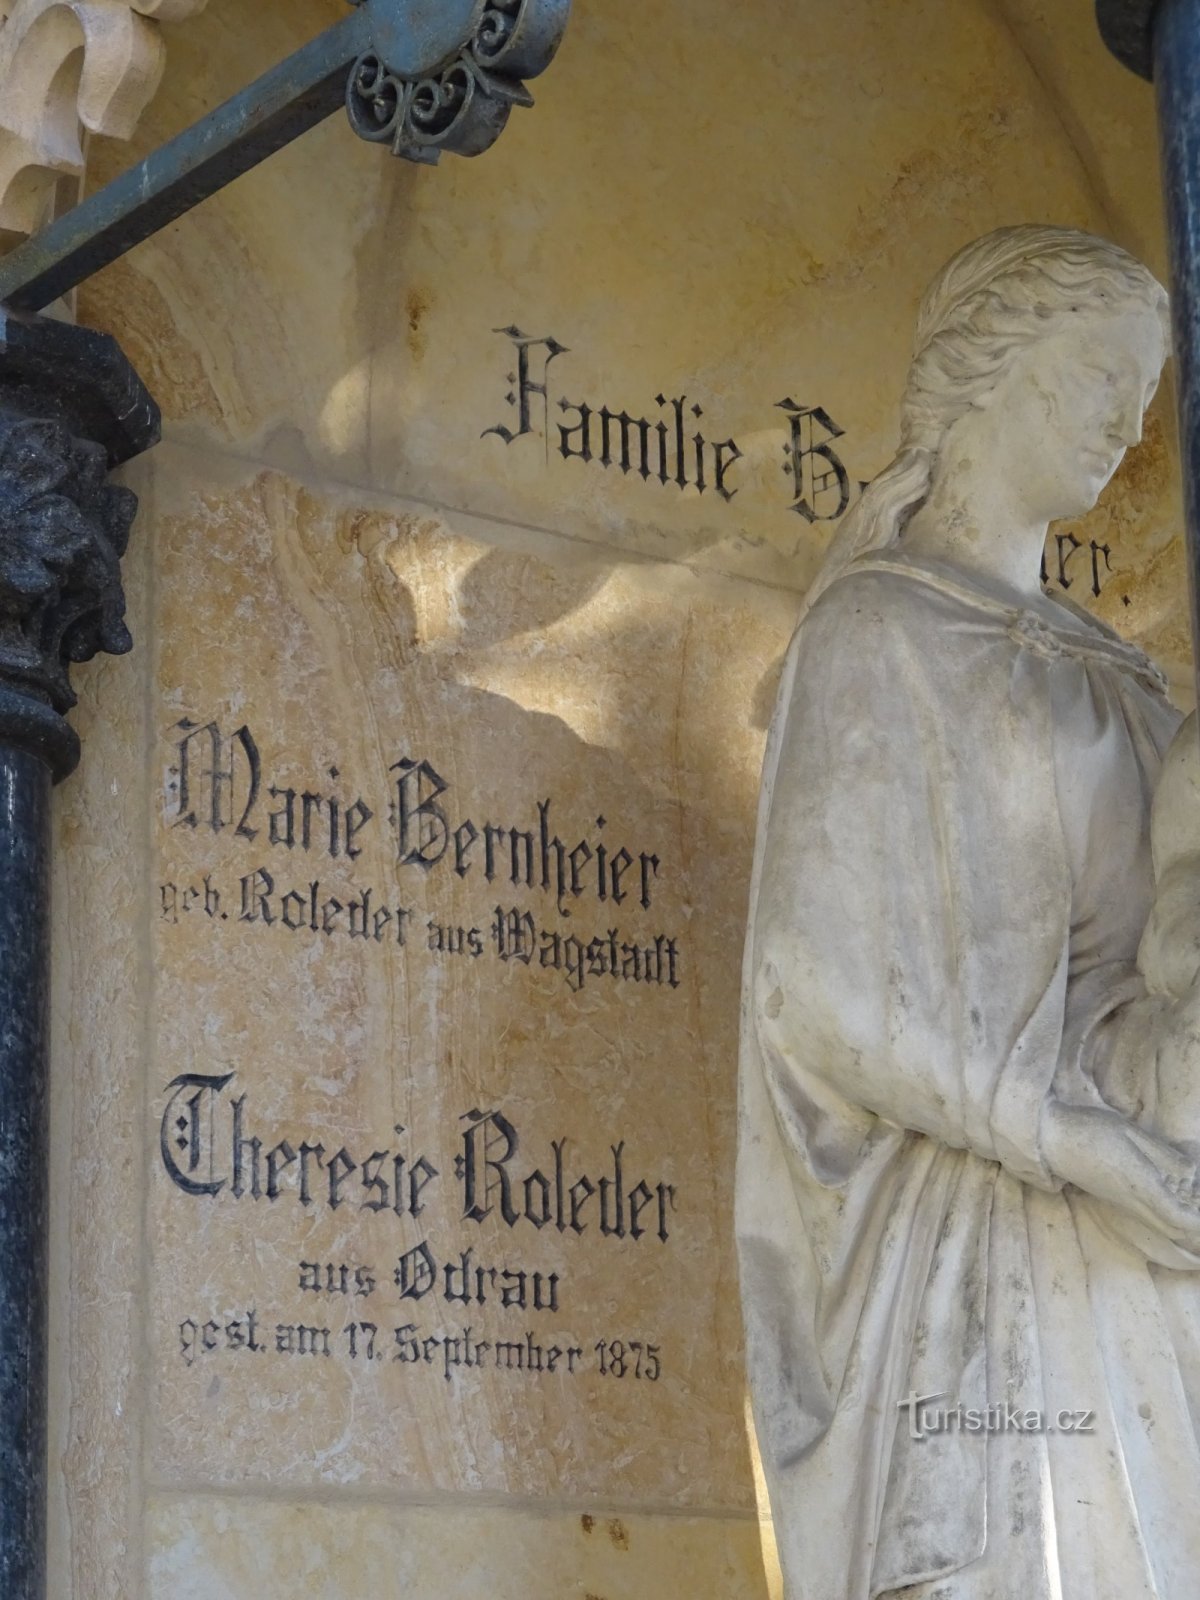 Odry - o túmulo da família Bernnheier